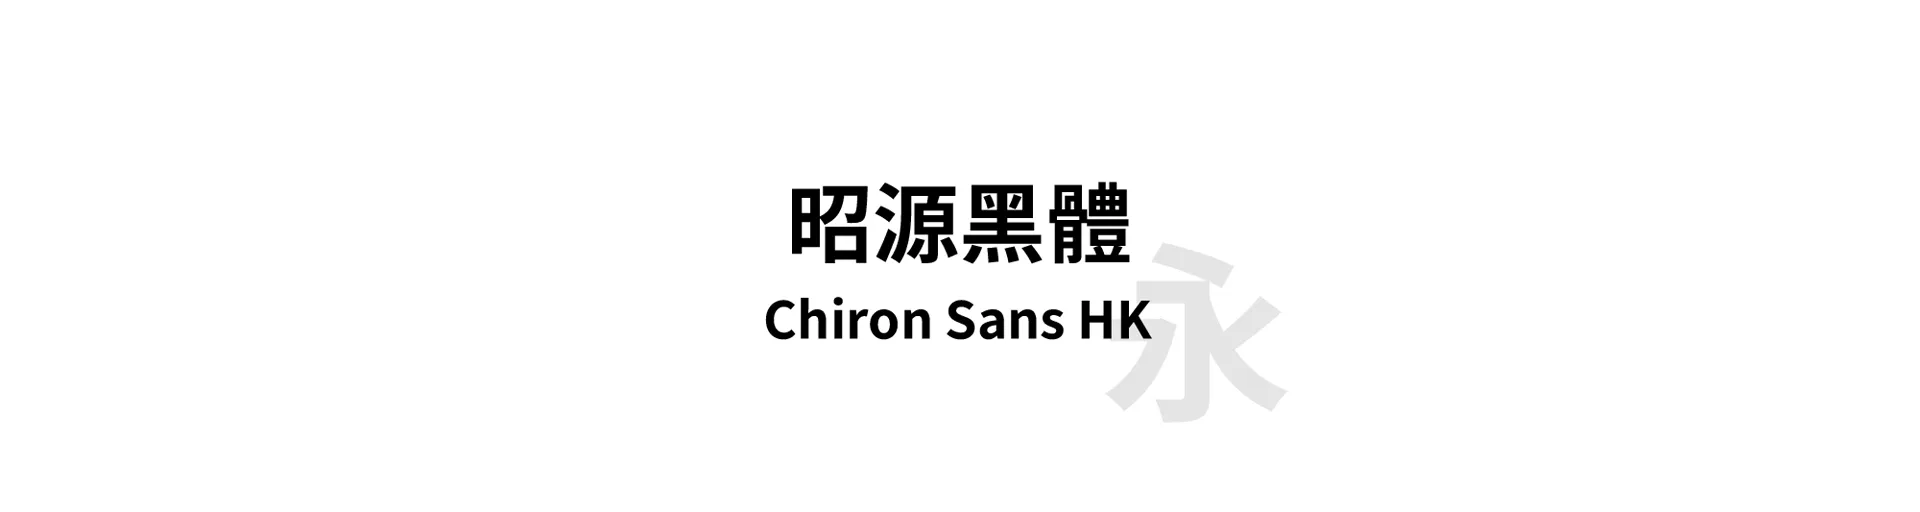 Chiron Sans HK